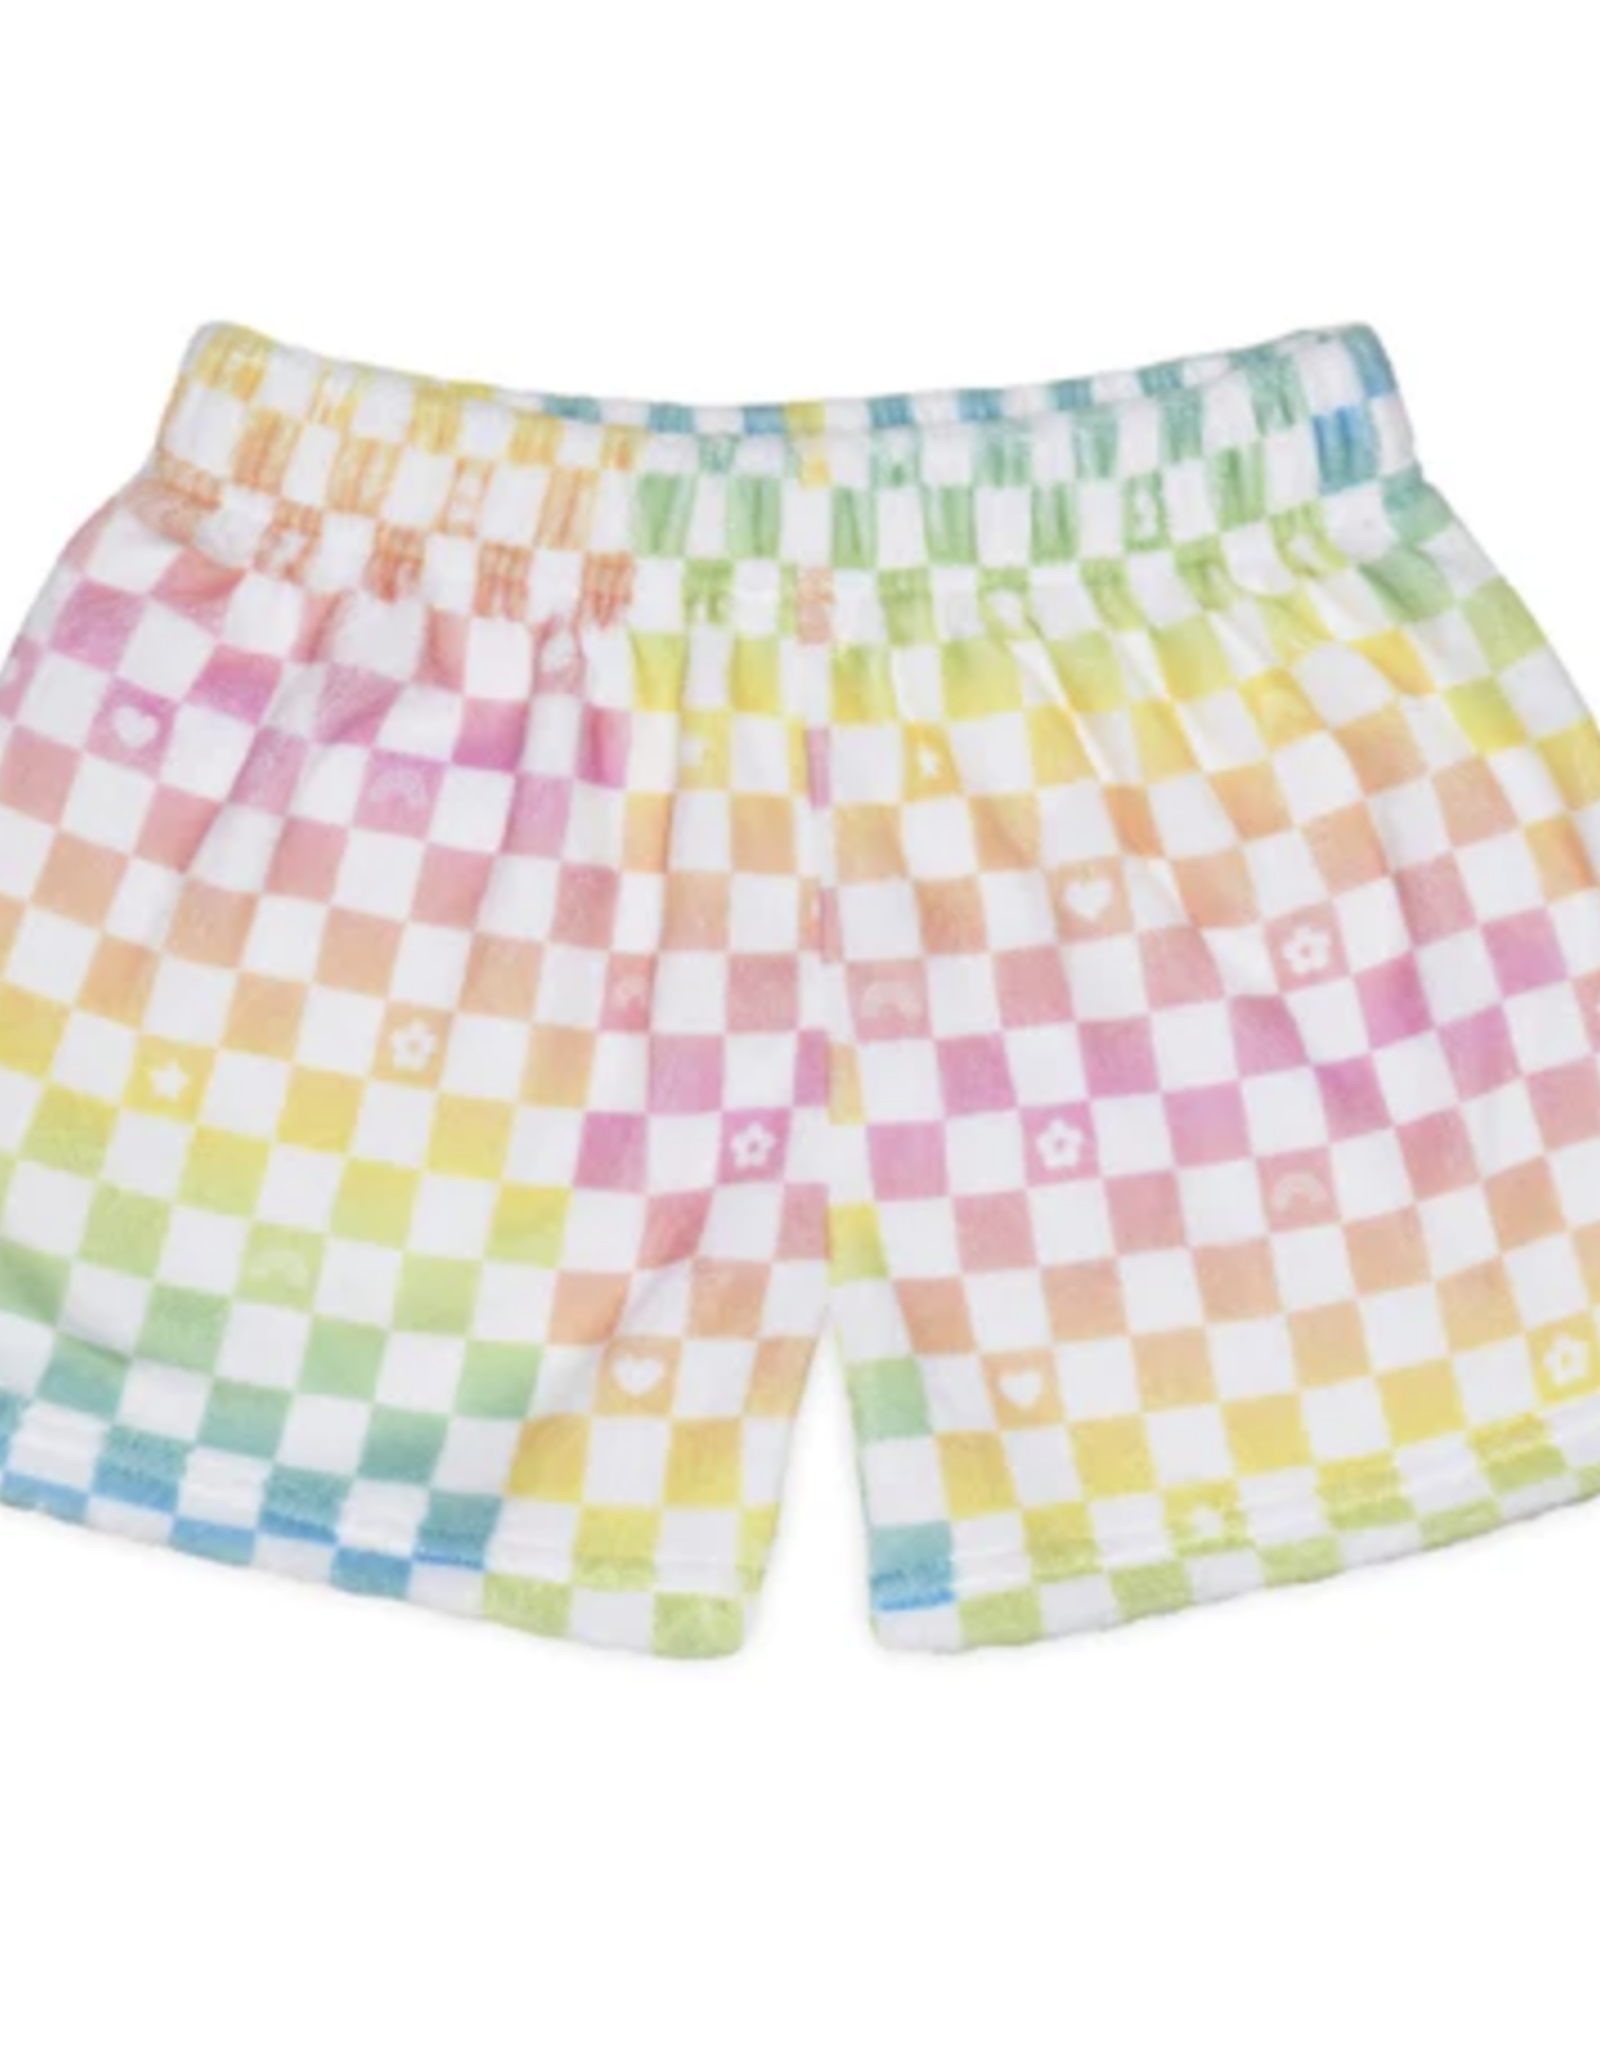 iScream plush shorts- ombre checkerboard